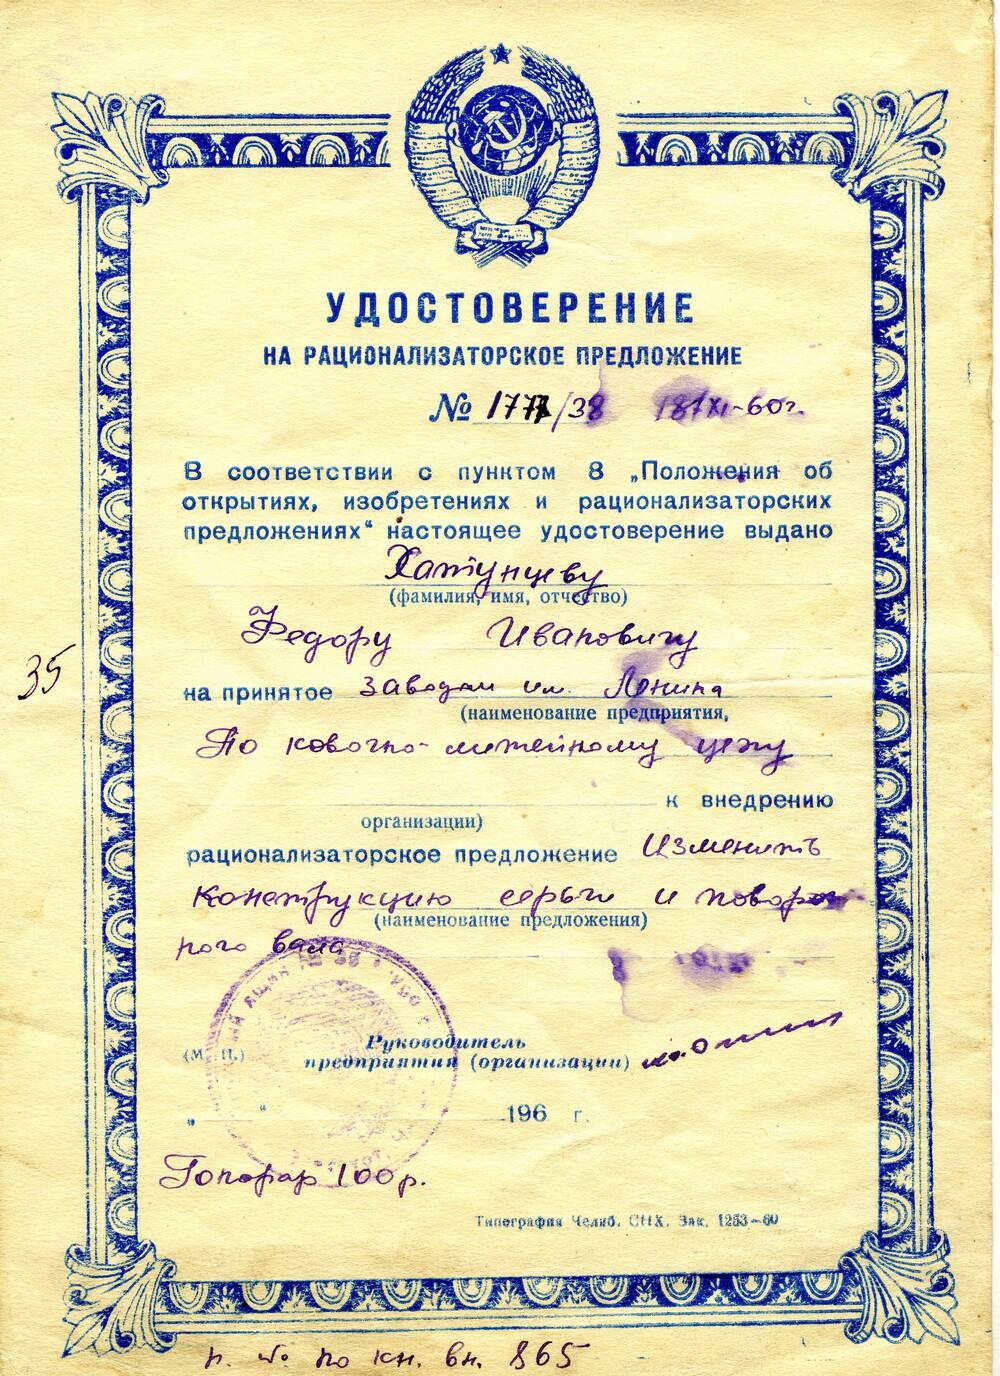 Удостоверение на рационализаторское предложение №1777/38 Хатунцева Федора Ивановича. 1960 г.